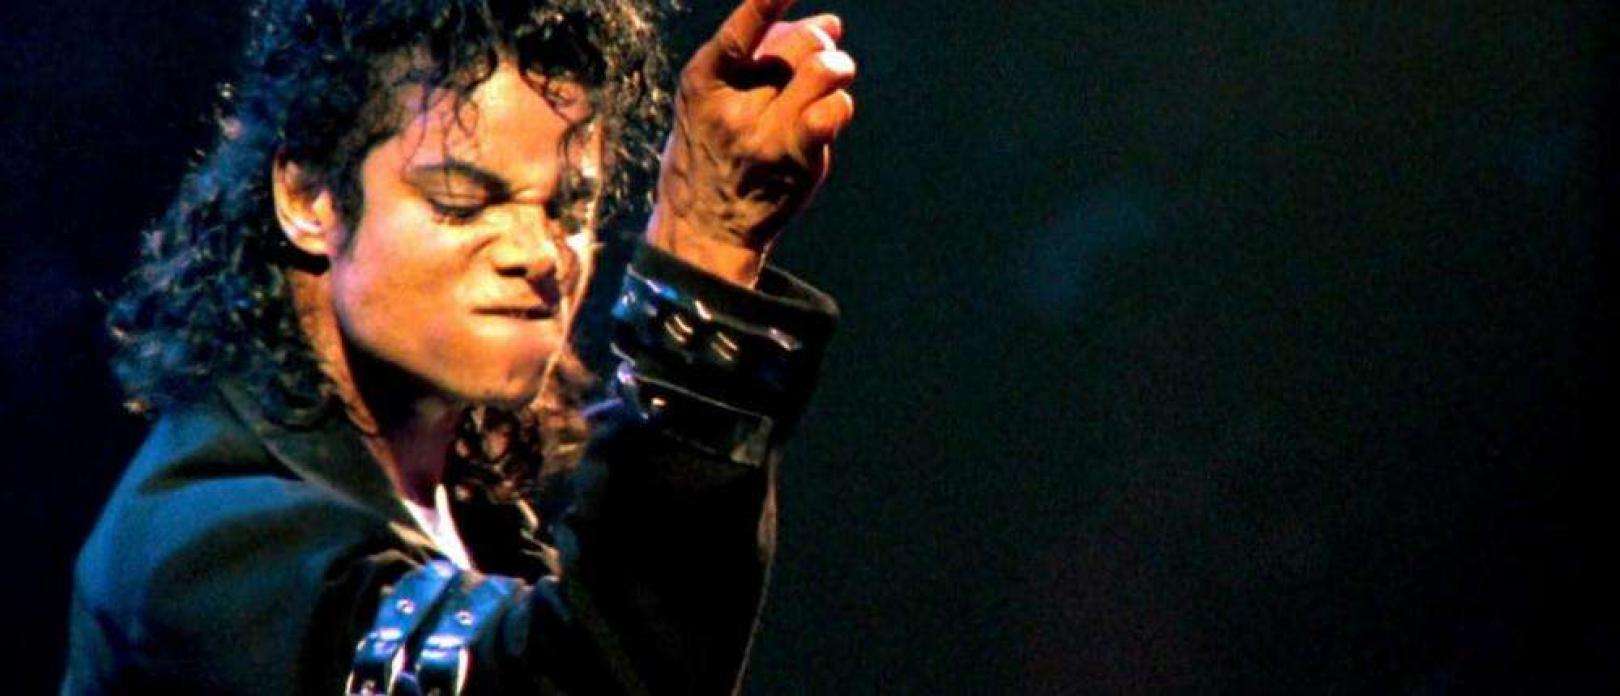 L'exposition phare du Grand Palais consacrée à Michael Jackson